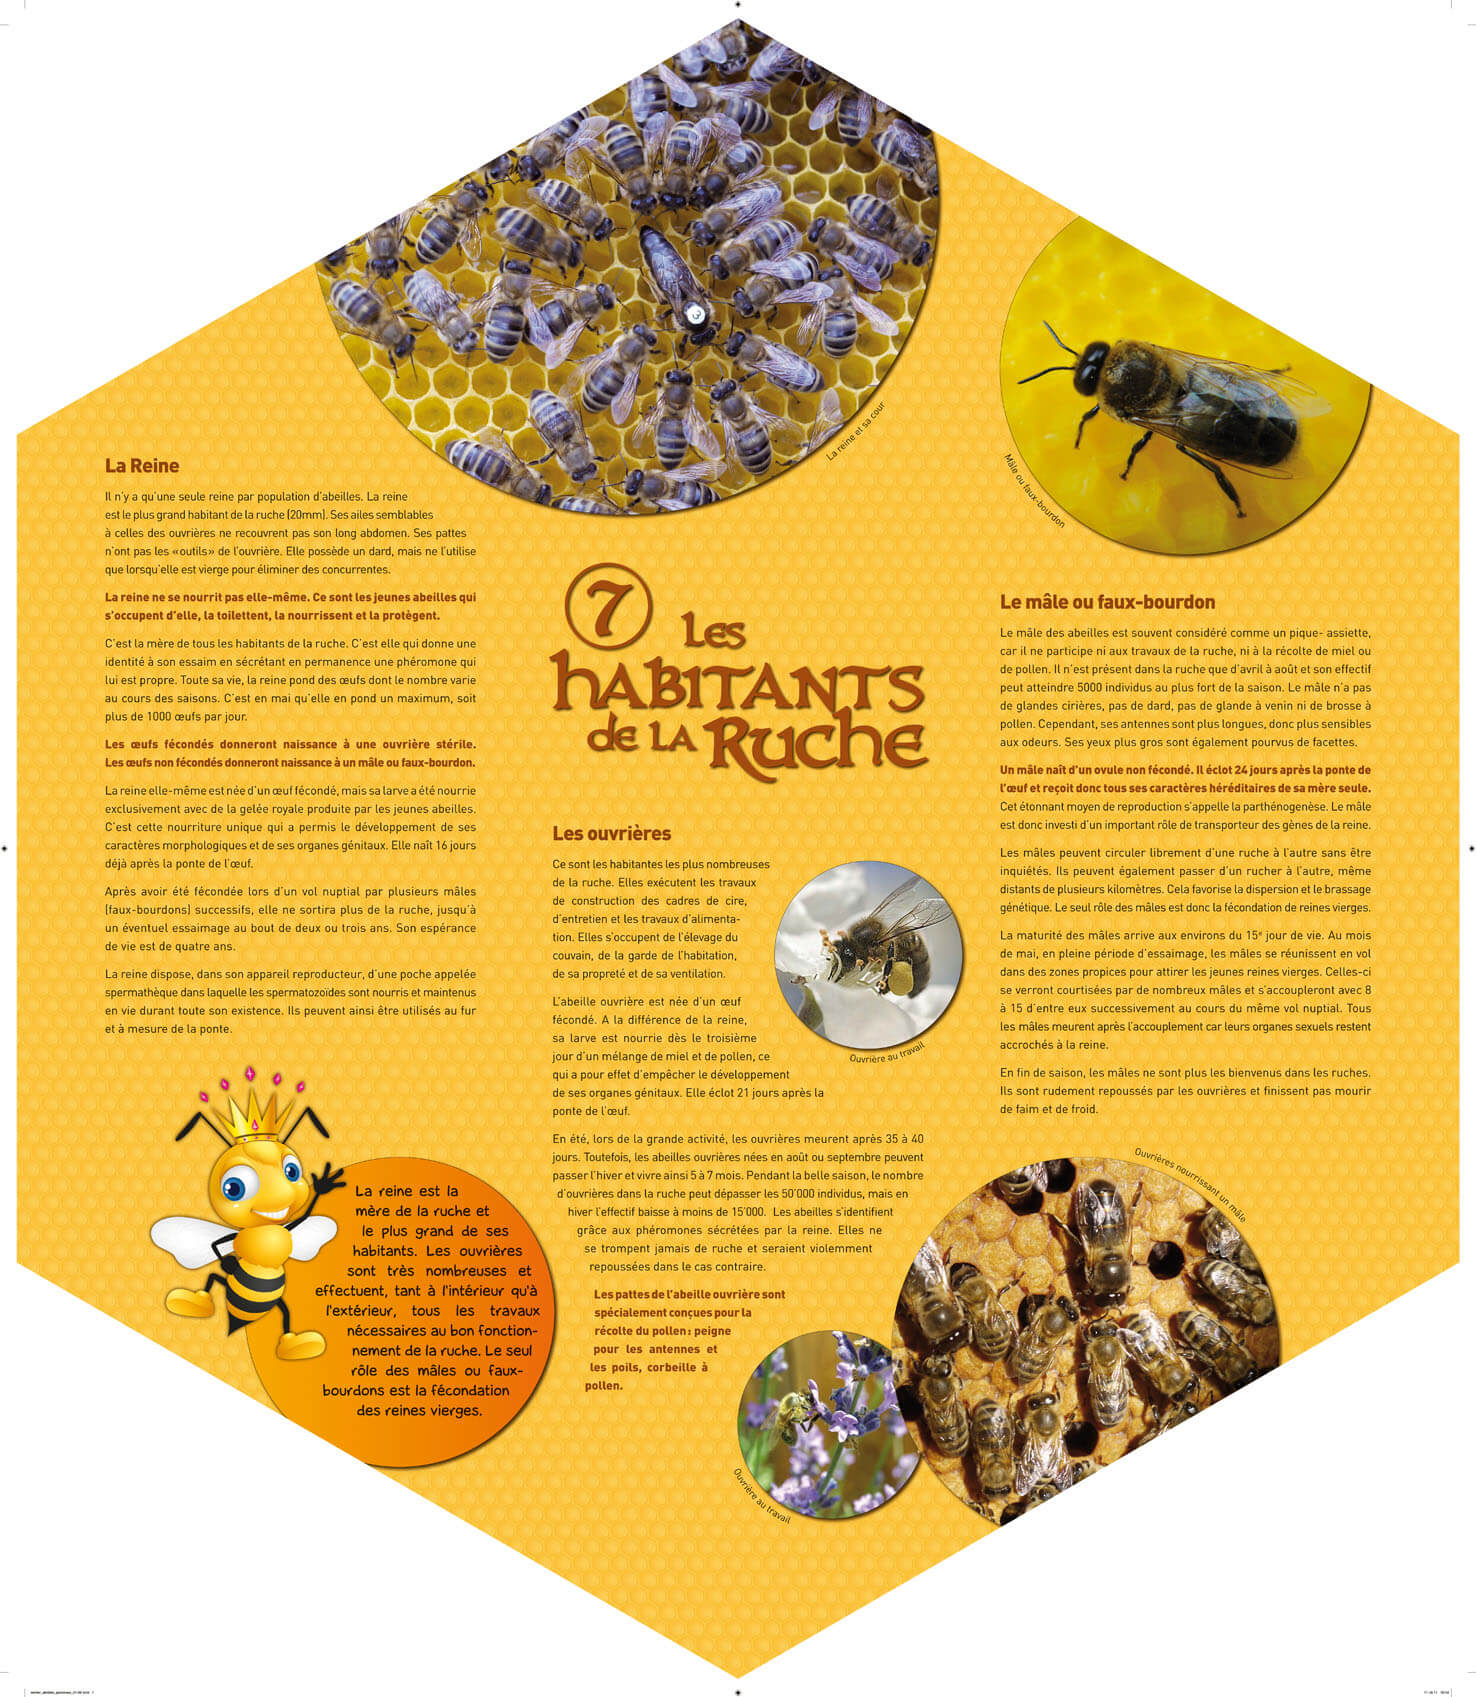 La reine des abeilles : un insecte fascinant!